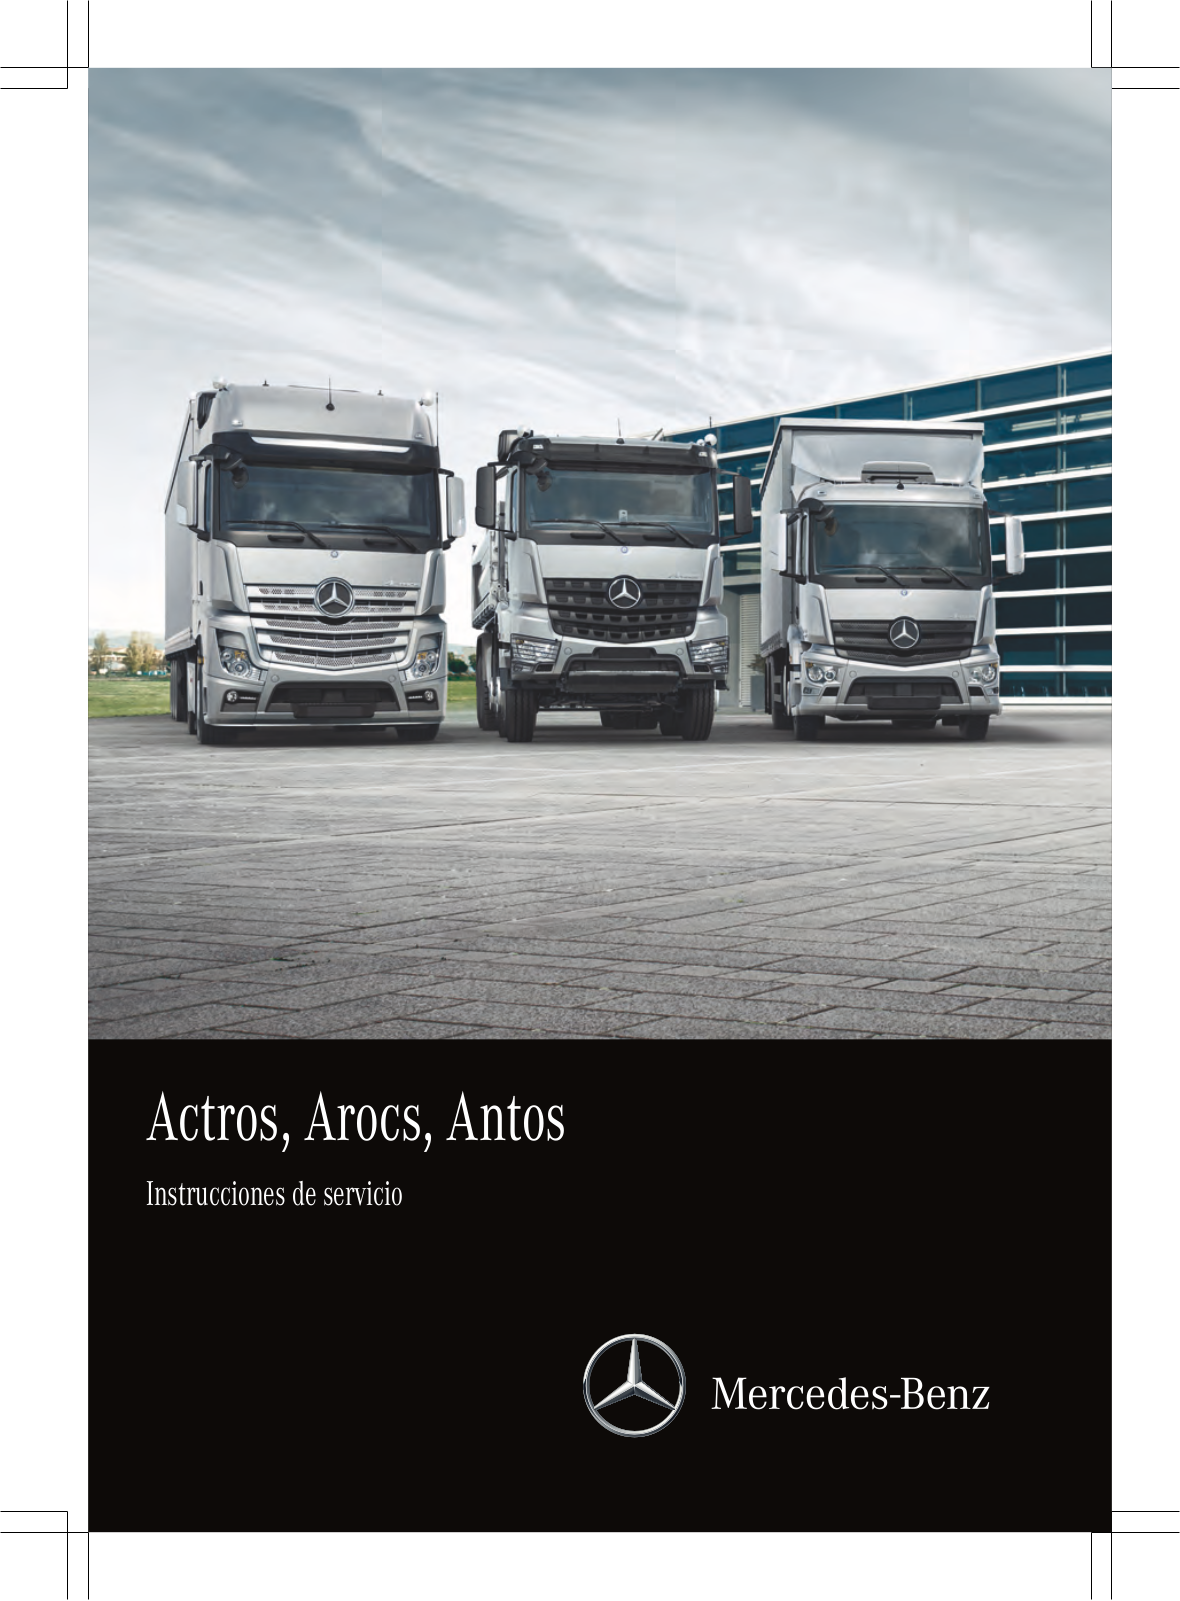 Mercedes-Benz Actros 2014, Antos 2014, Arocs Full 2014 Service Manual